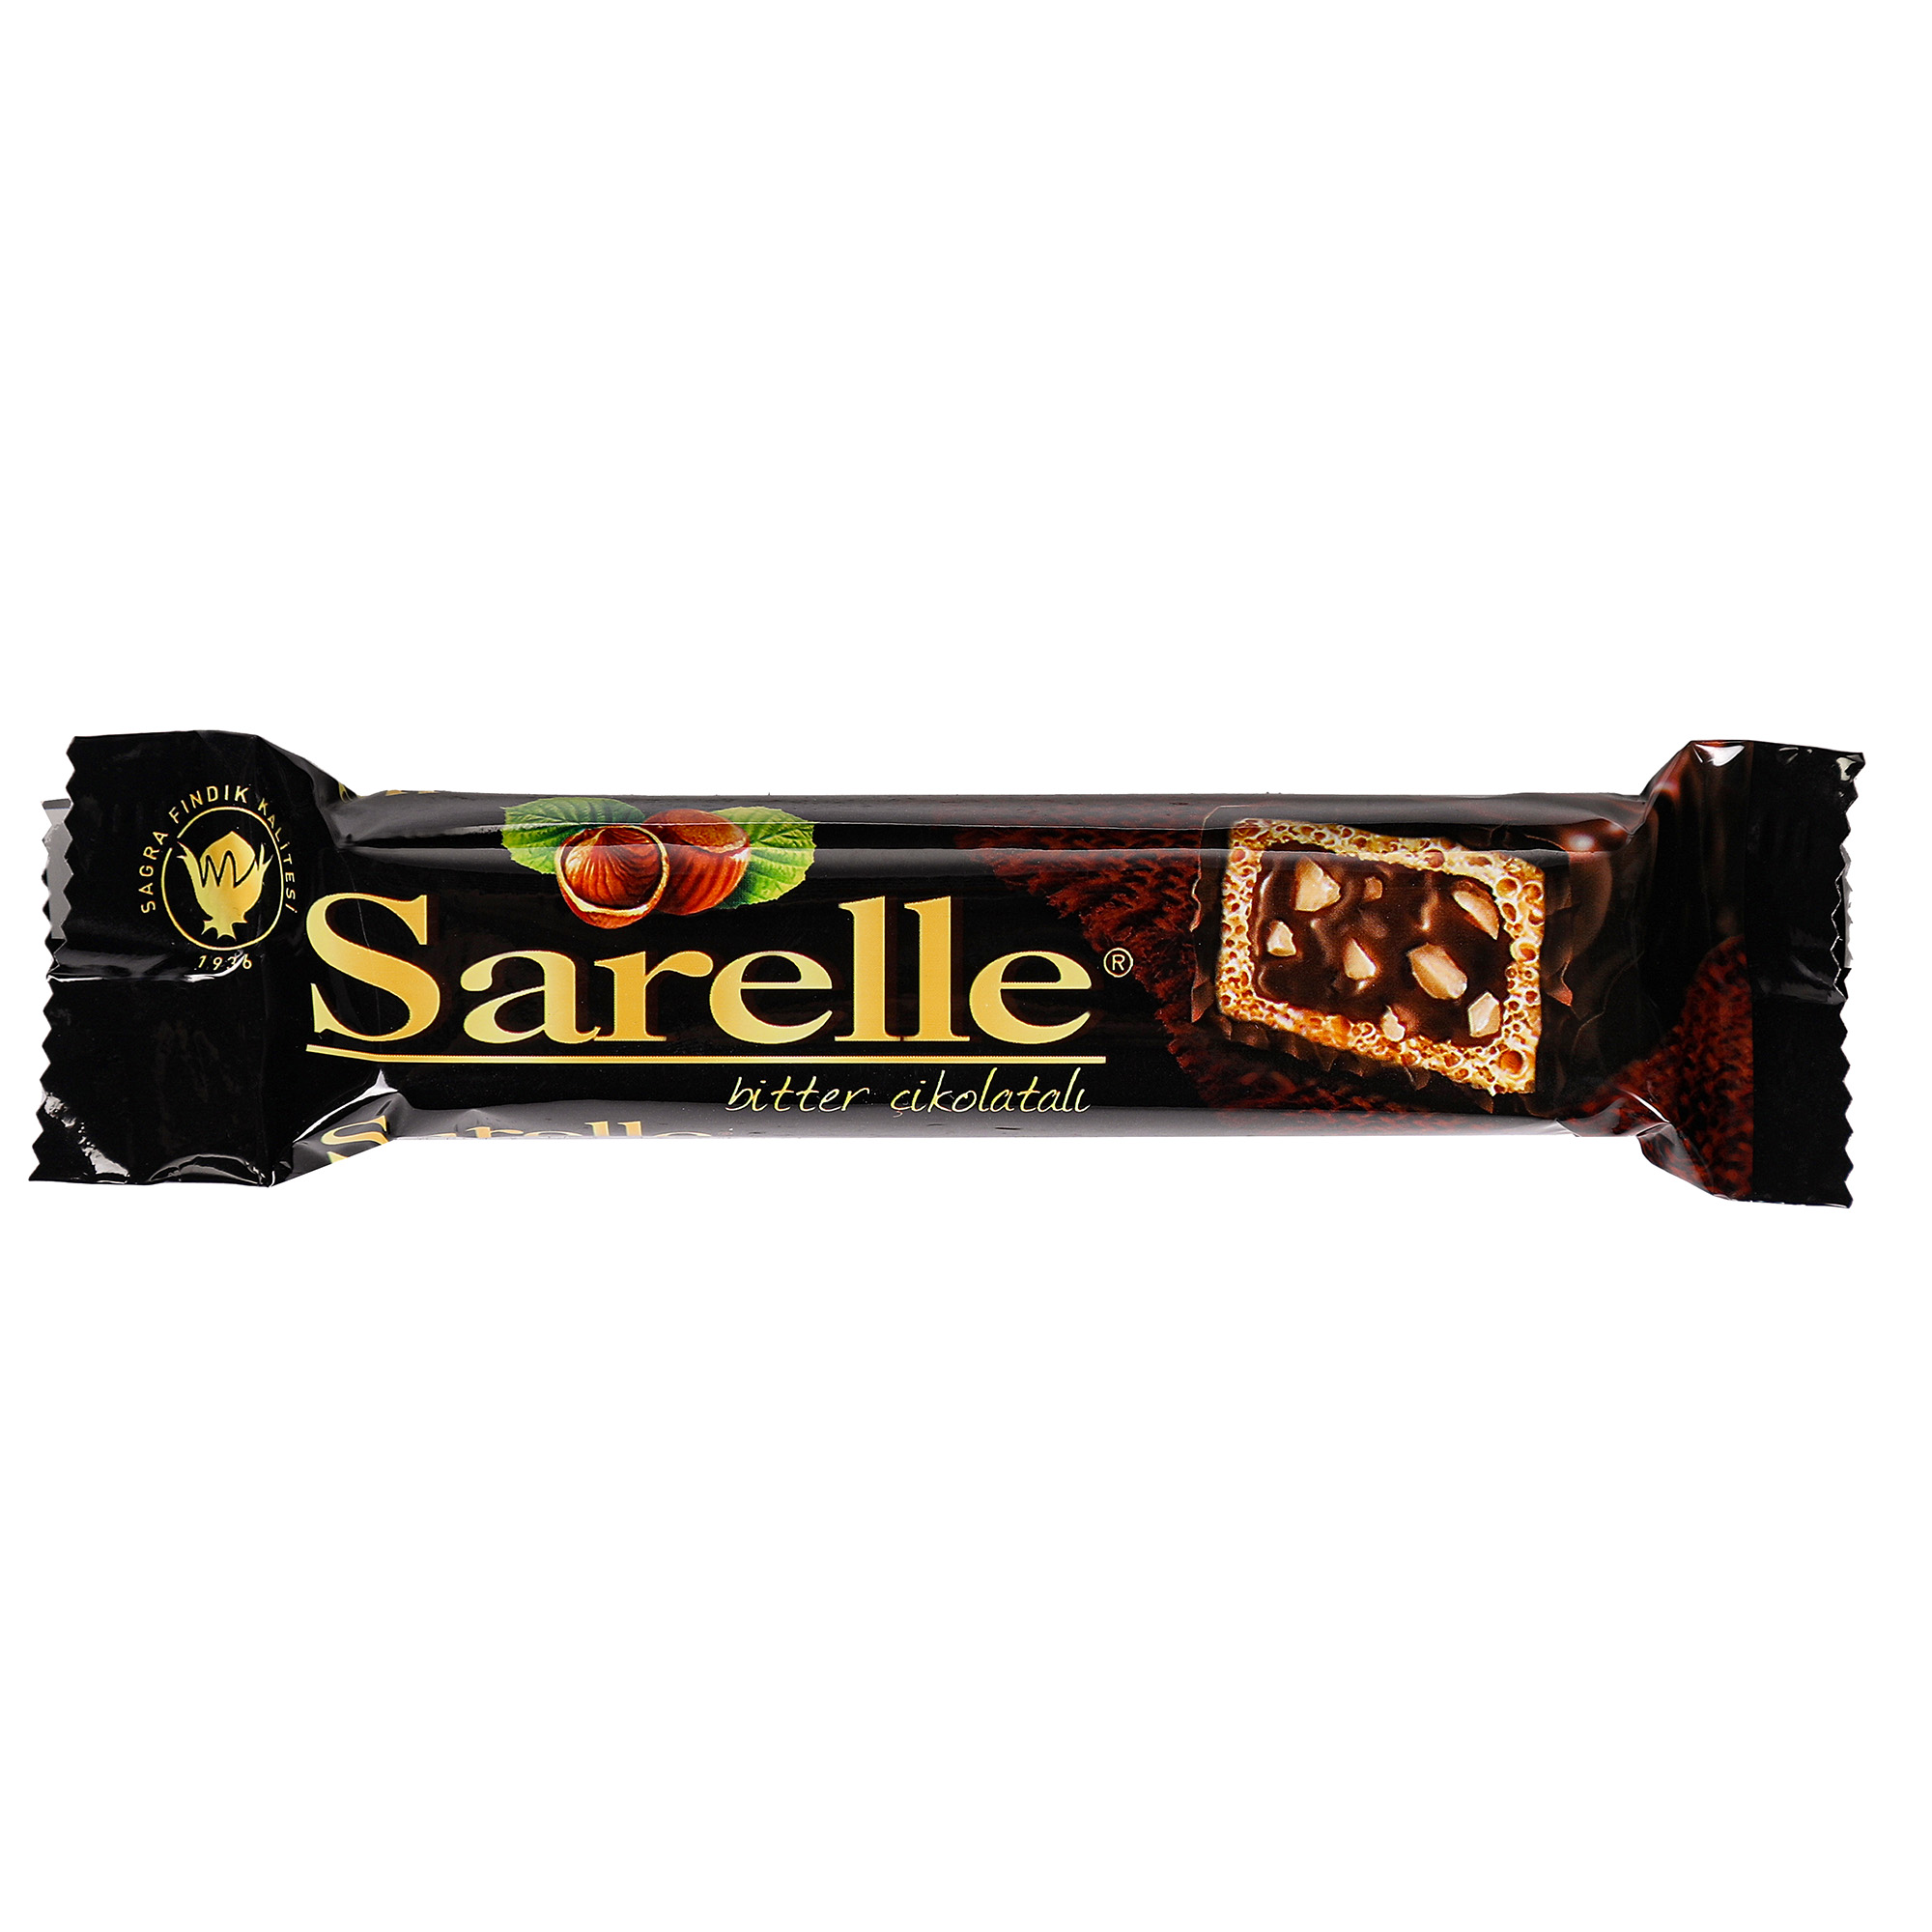 Вафли Sarelle с орехом и шоколадынм кремом в темном шоколаде, 33 г вафли toren mr bite с темно шоколадным кремом 38 г